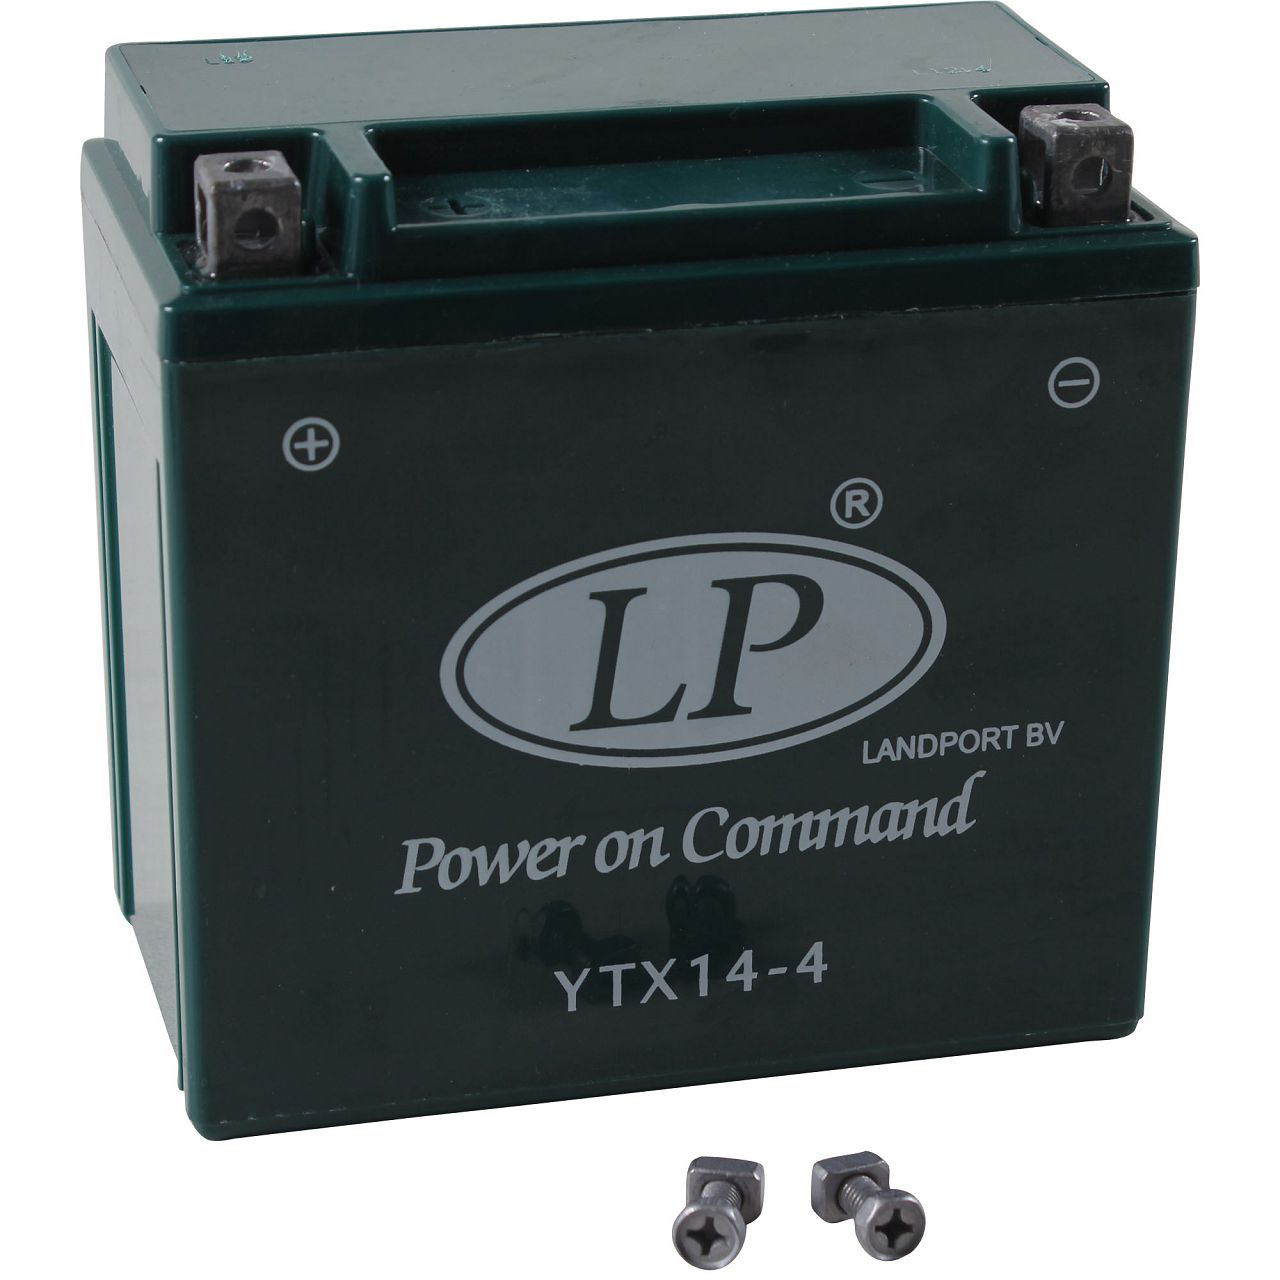 LIQUI MOLY 3139 Batteriepolfett Batterie-Pol-Fett 10 g - ws